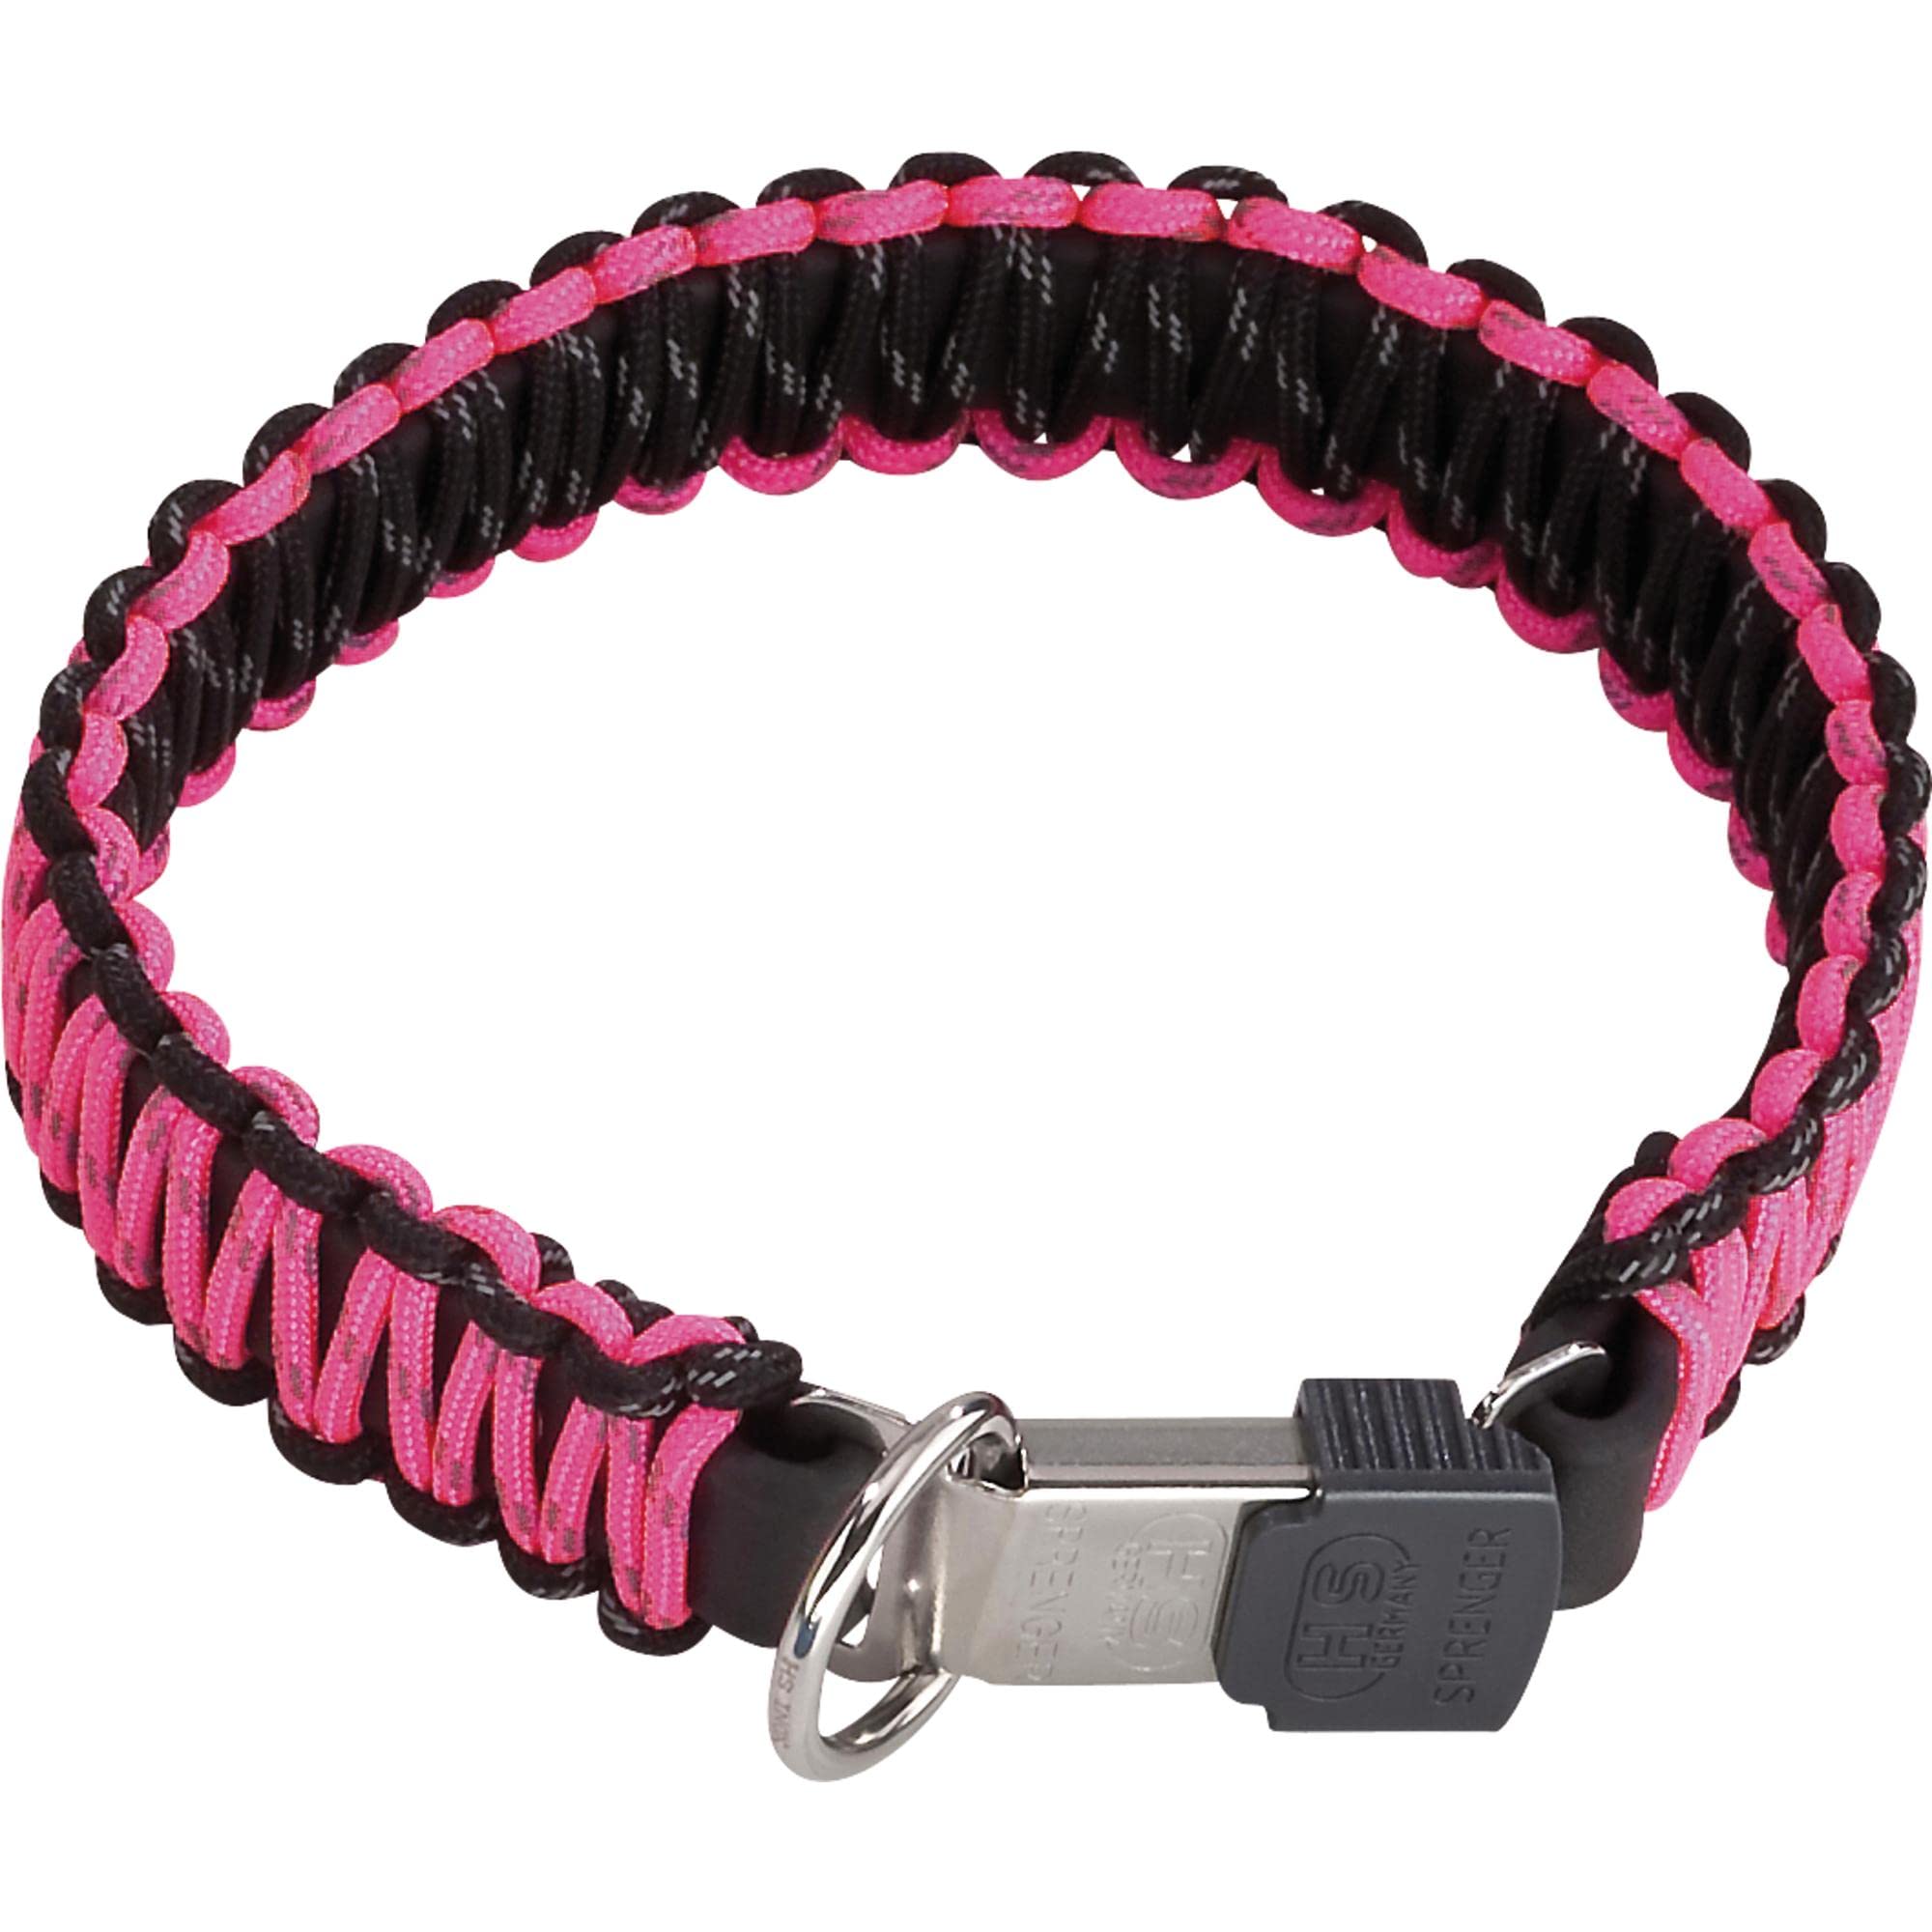 Sprenger Hundehalsband aus stabilem Paracord Nylon mit Edelstahl Clic Lock Verschluss I Wasserabweisende Halskette, reflektierend, langlebig 50 cm, pink